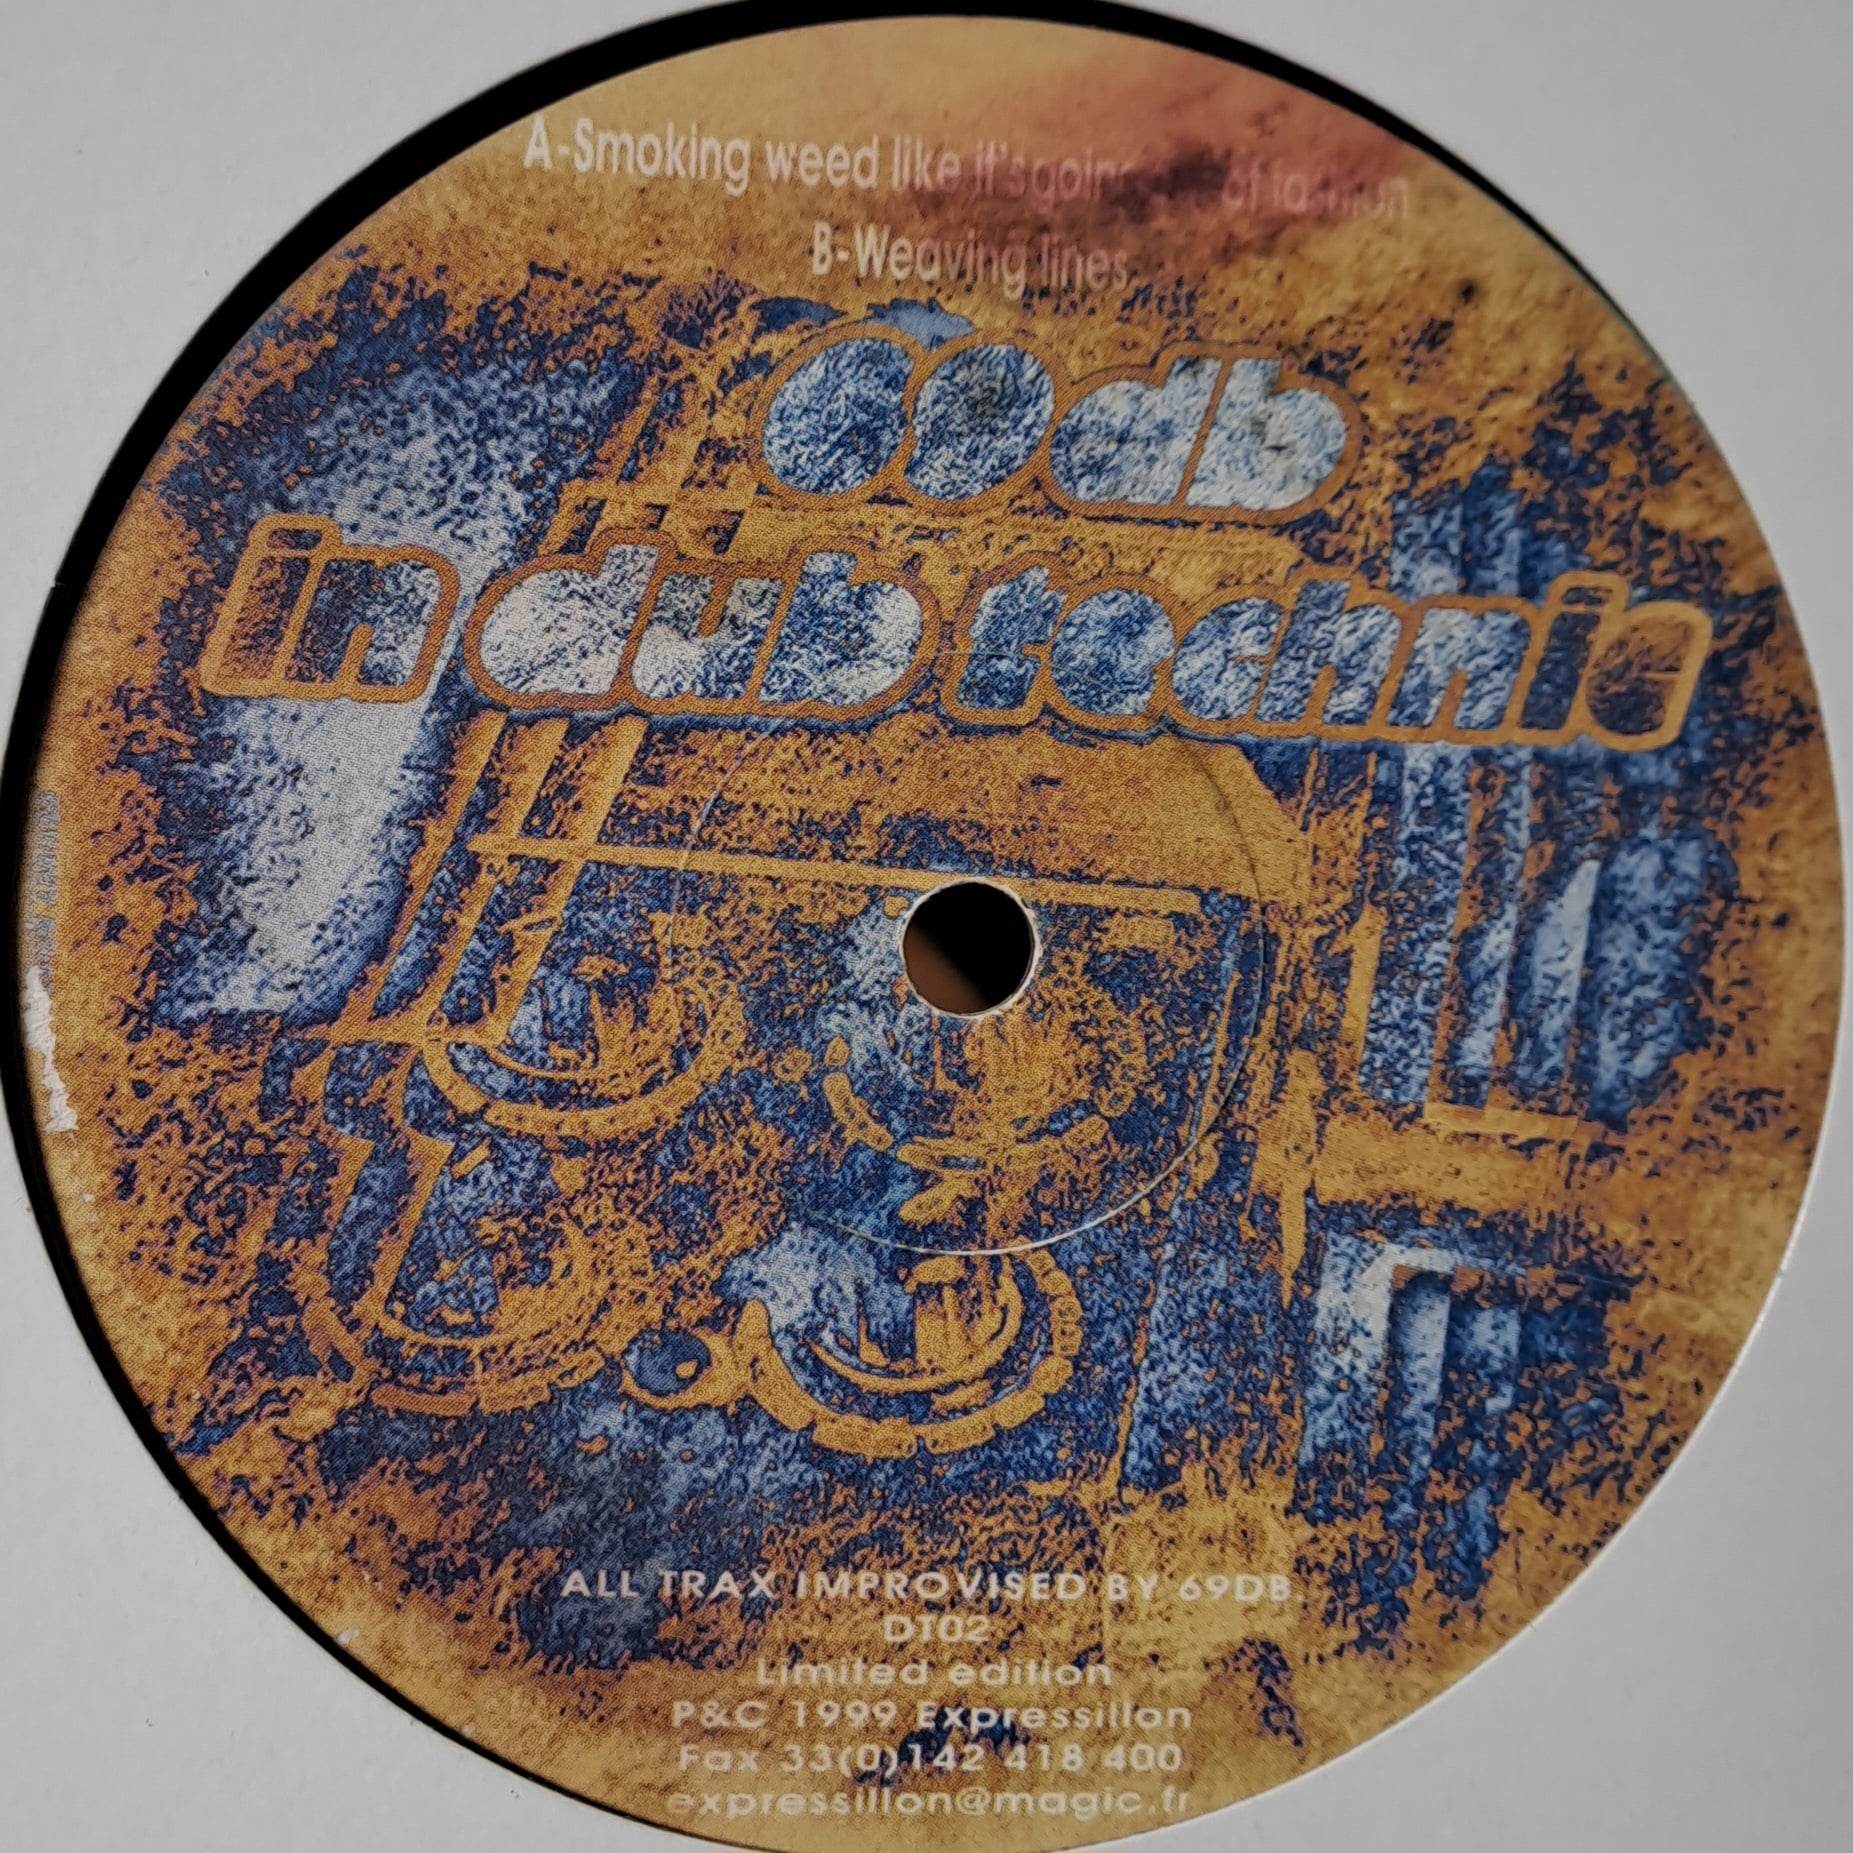 Dub Technic 02 - vinyle Breakbeat
